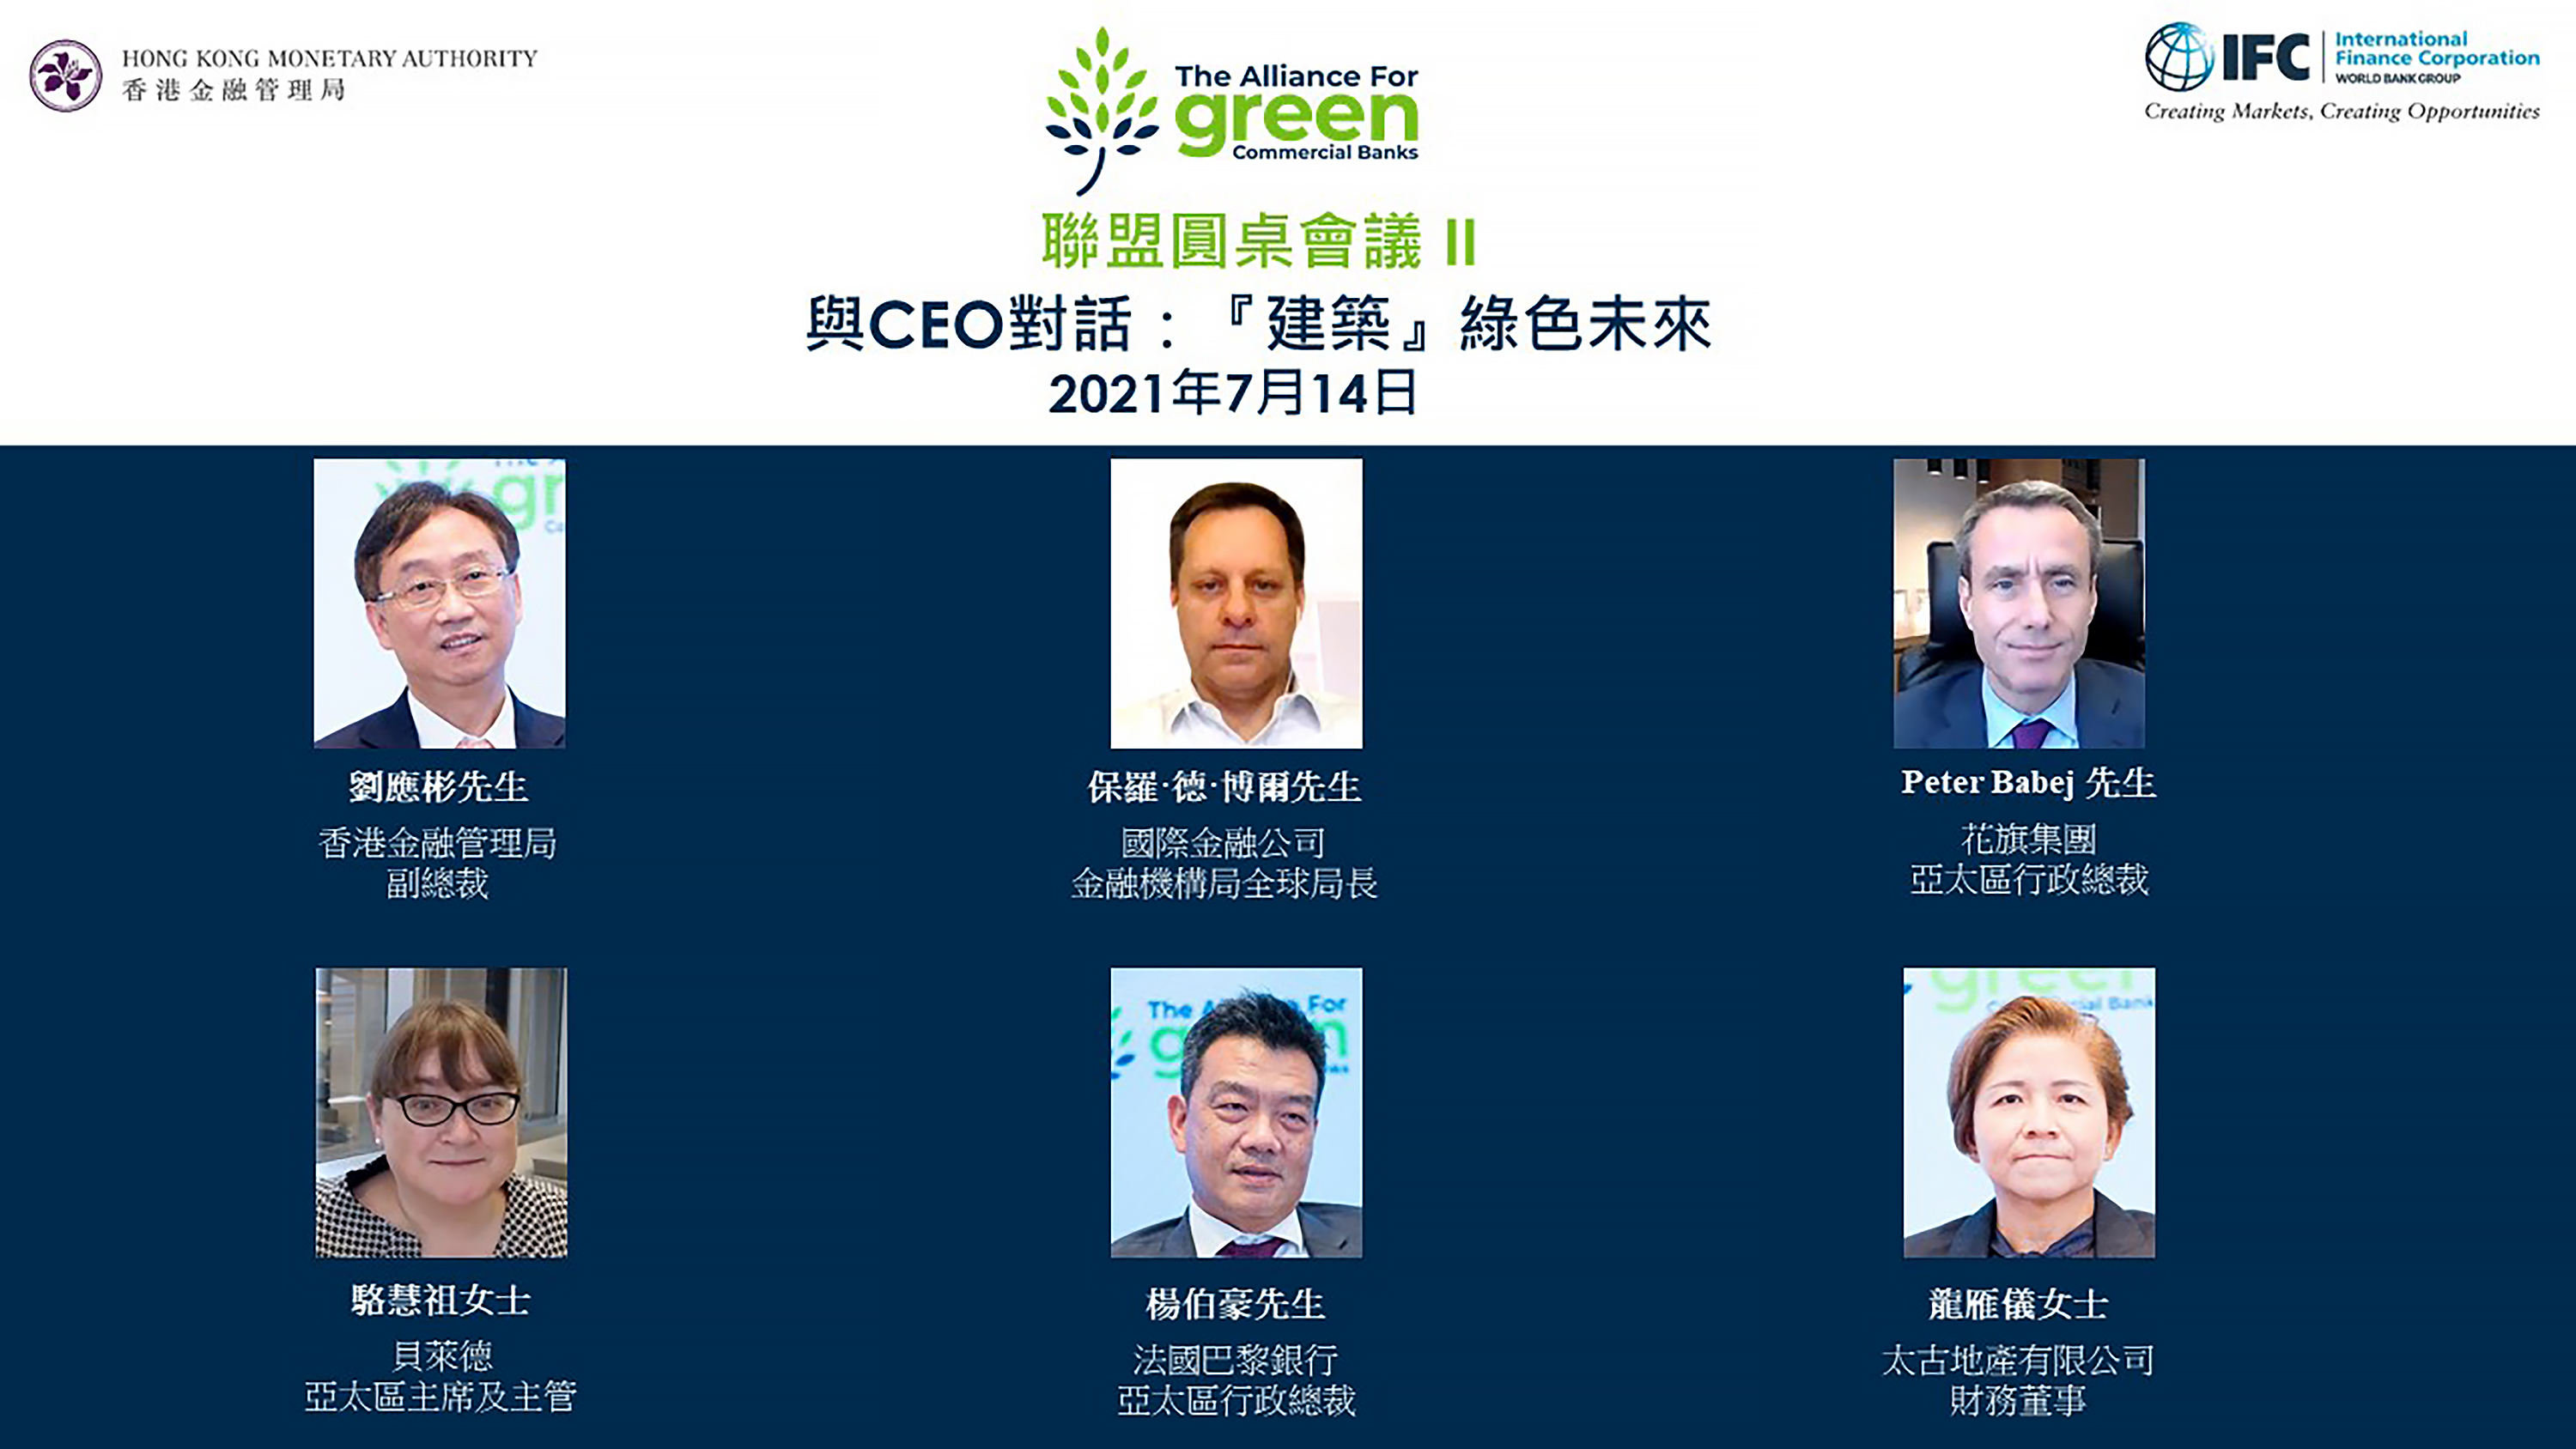 「綠色商業銀行聯盟」於今日（2021年4月27日）舉辦首場網上圓桌會議「與CEO對話：綠色銀行轉型的機遇」。是次活動由IFC運營高級副總裁斯蒂芬妮·馮·弗裡德堡女士（第一行中）的開幕致辭，以及中國金融學會綠色金融專業委員會主任馬駿博士（第一行右）的主題演講展開。圓桌會議由金管局總裁余偉文先生（第一行左）主持，與會者包括香港上海滙豐銀行有限公司副主席兼行政總裁王冬勝先生（第二行左）；中國銀行（香港）有限公司副董事長兼總裁孫煜先生（第二行中）; 及IFC 亞太地區副總裁阿方索·加西亞·莫拉先生（第二行右）。